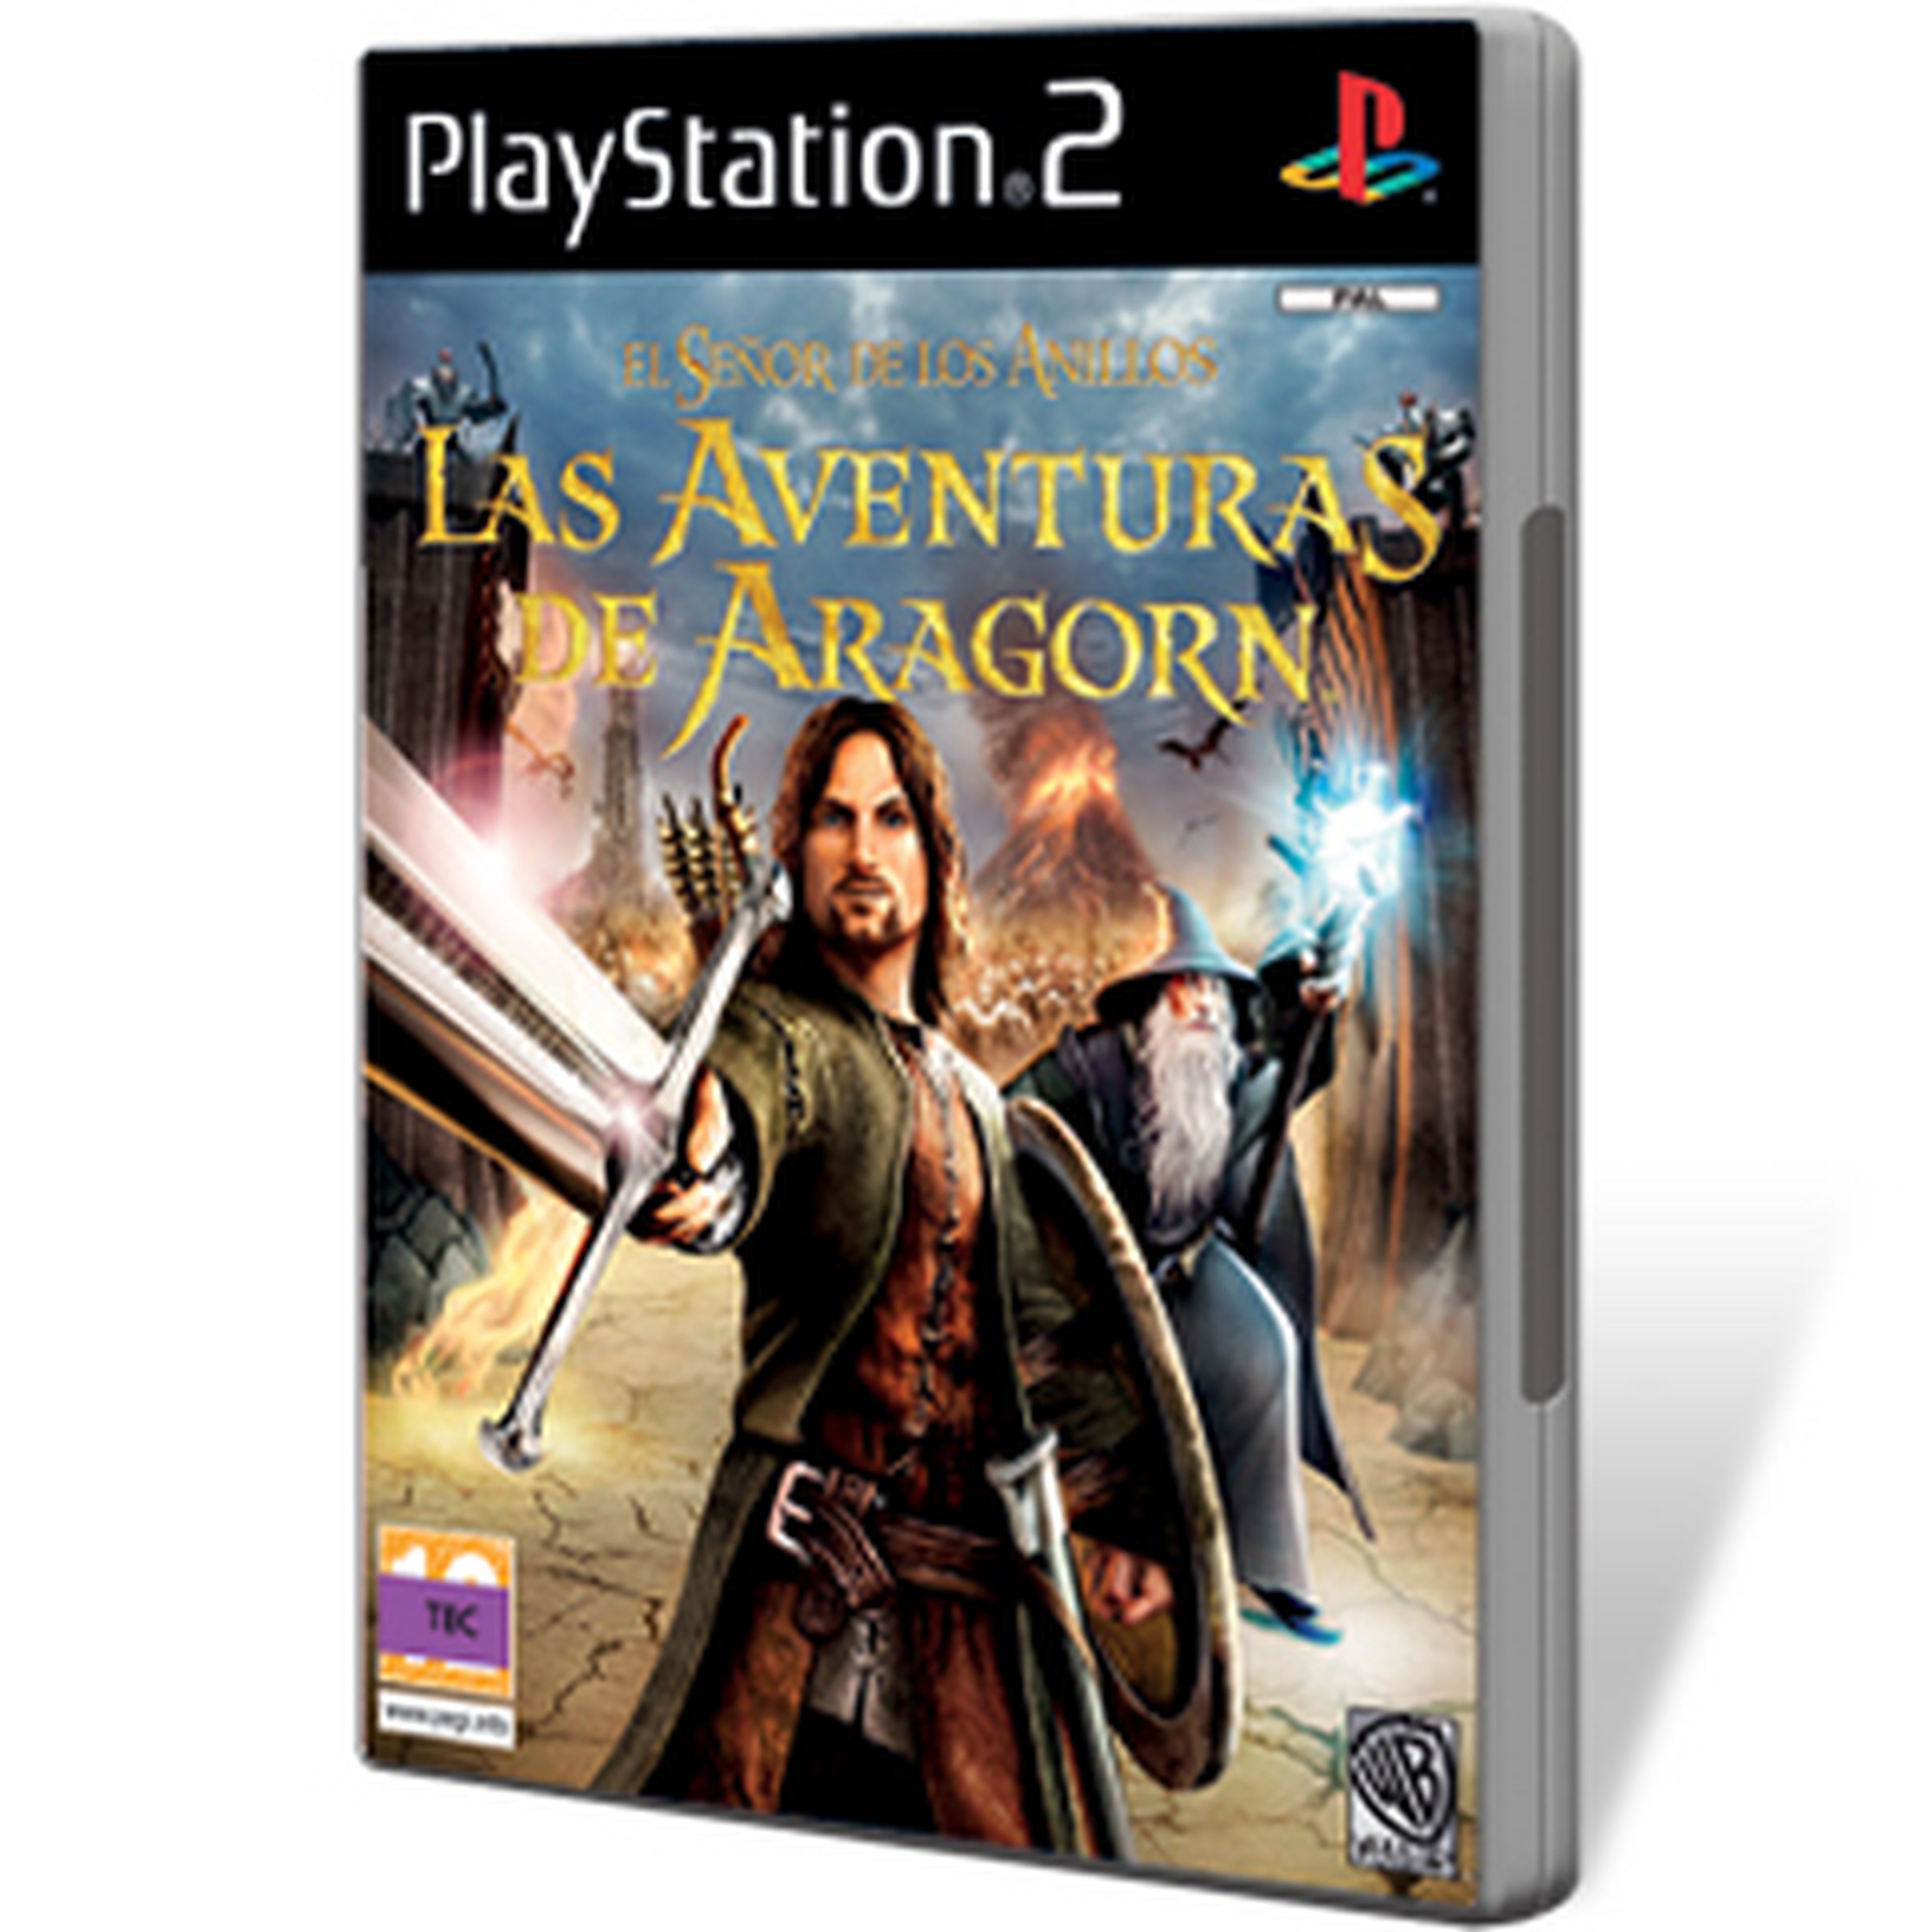 El Señor de los Anillos Las Aventuras de Aragorn para PS2